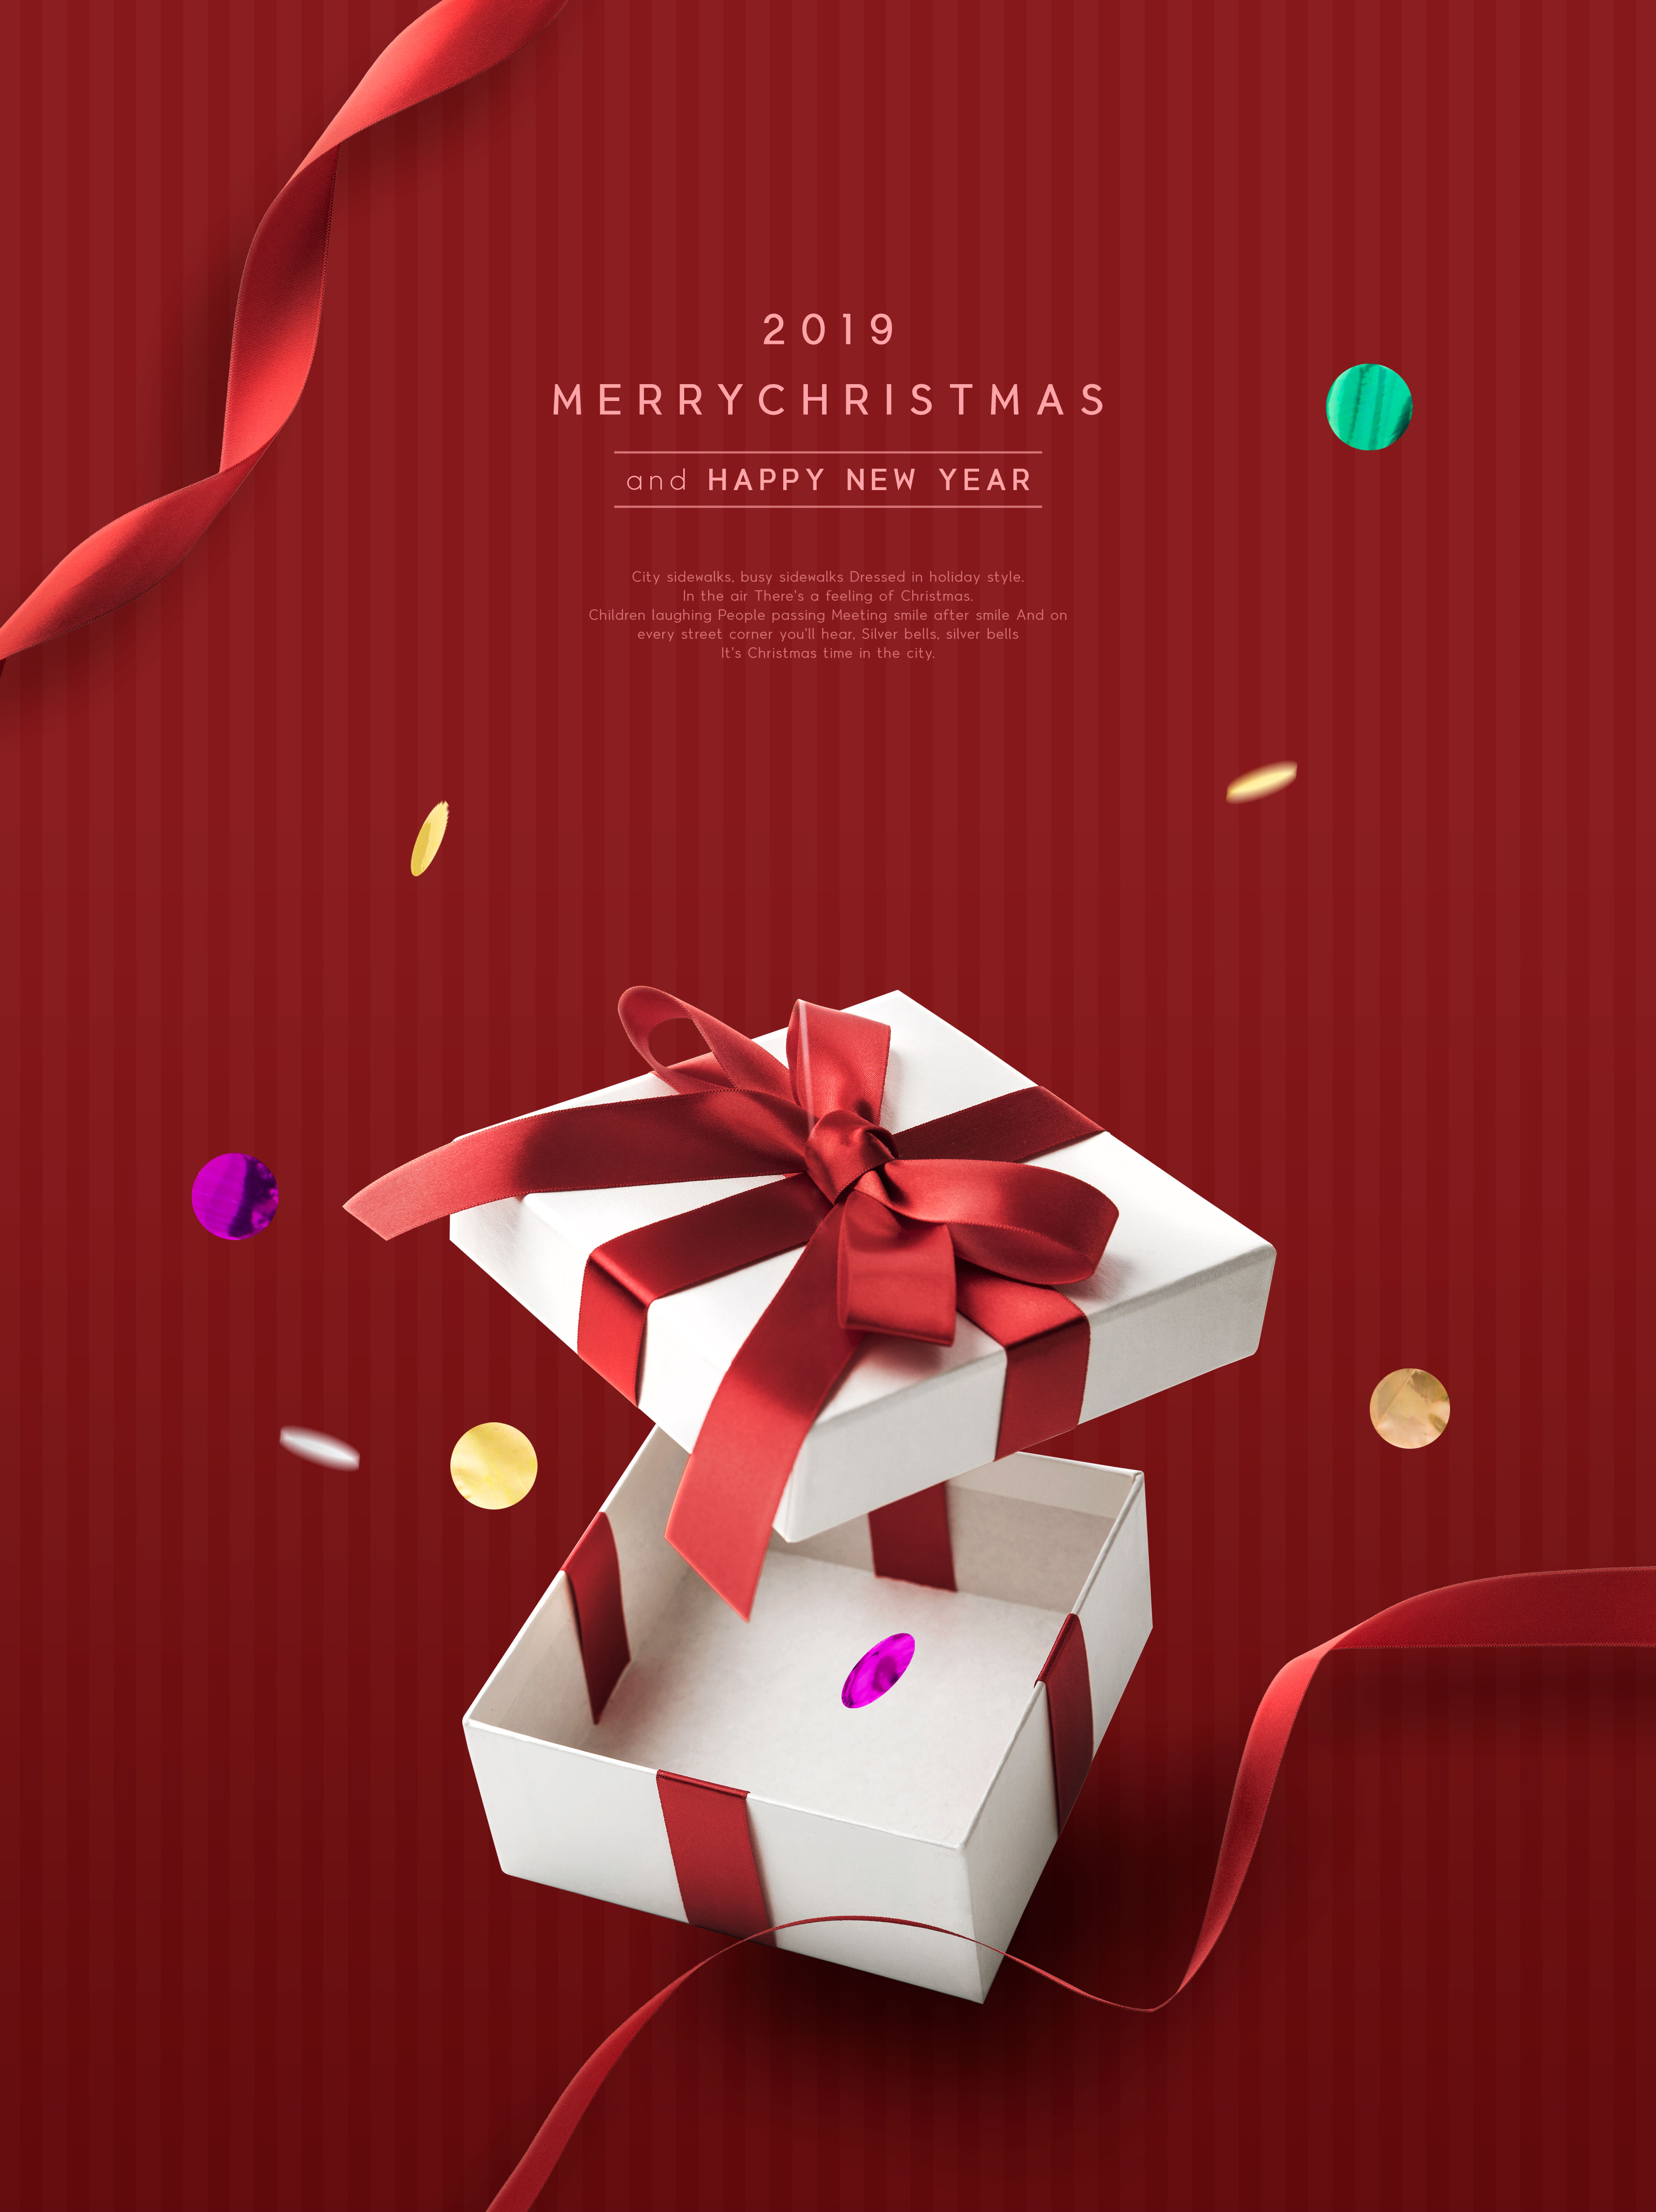 圣诞/新年礼品促销活动海报设计模板[PSD]插图